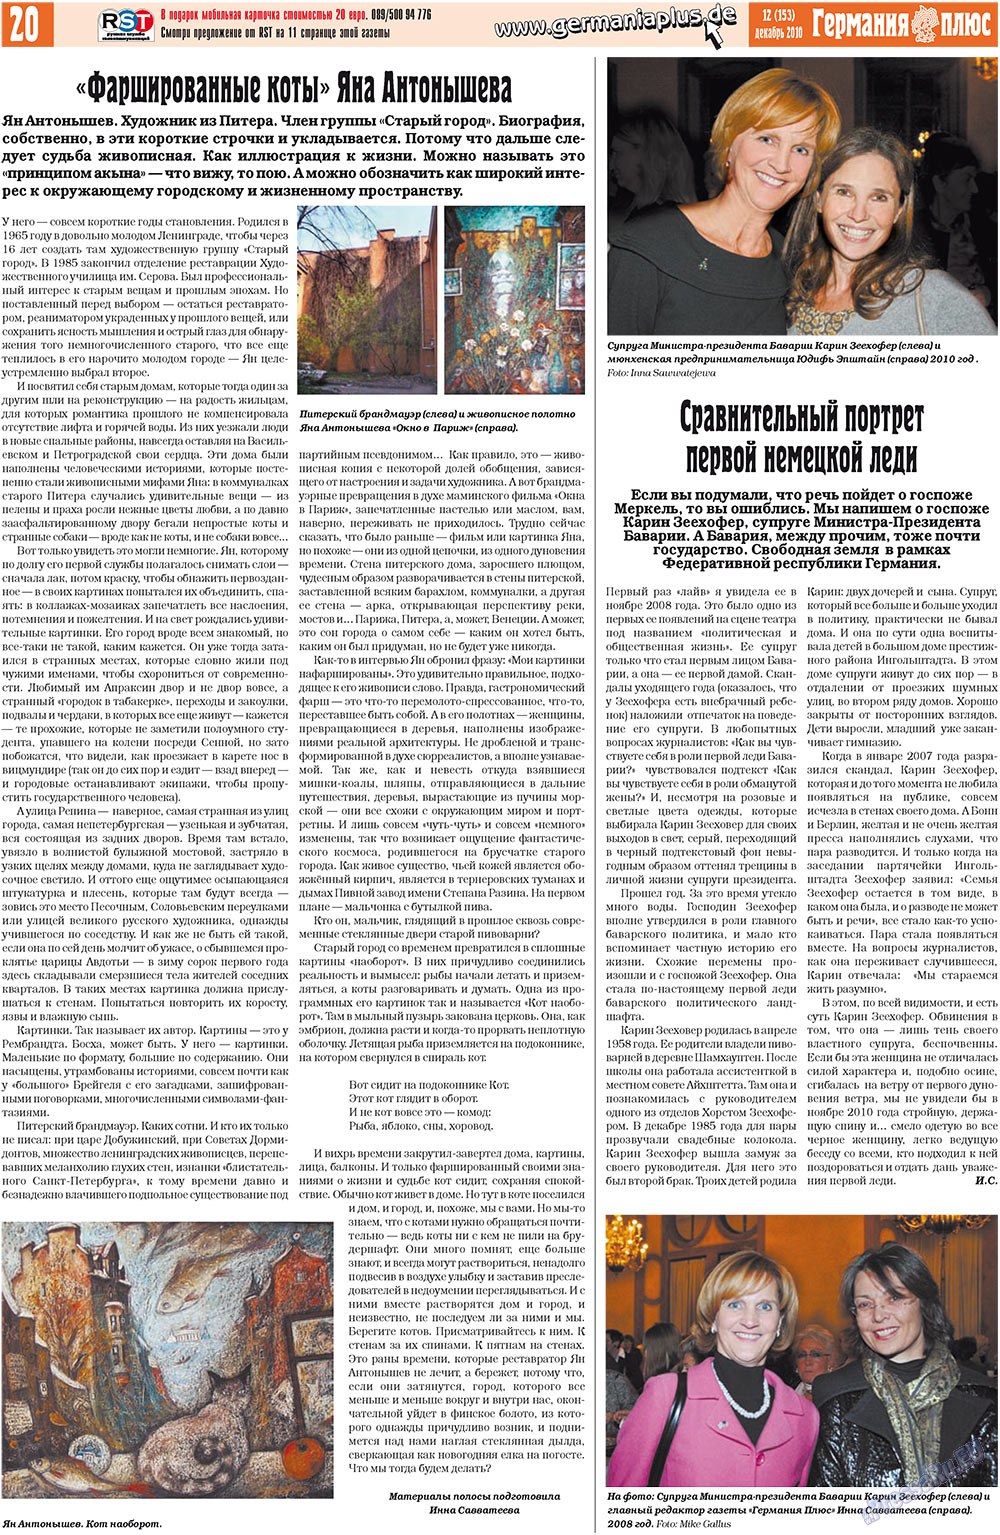 Германия плюс, газета. 2010 №12 стр.20